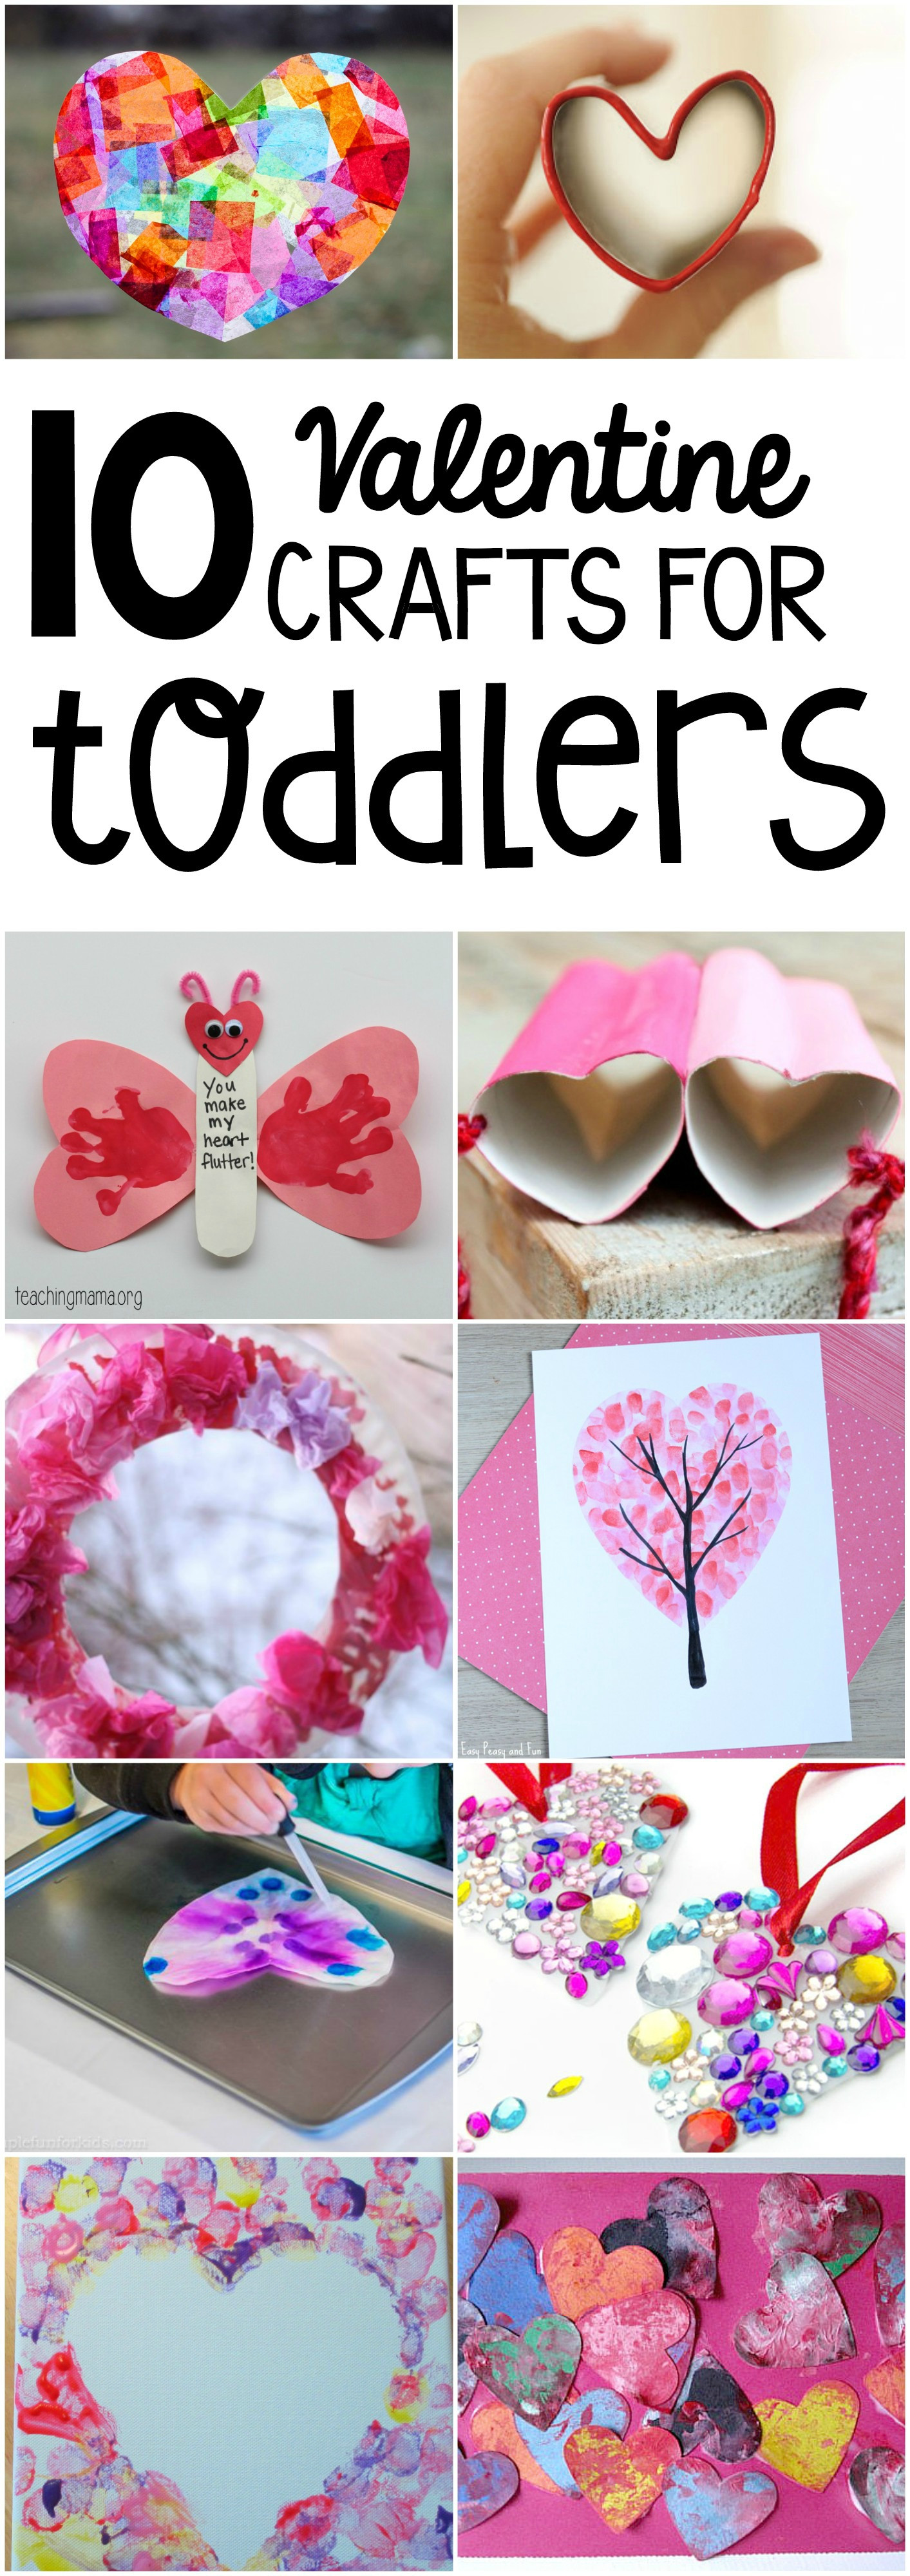 Toddler Valentine Craft Ideas
 10 Valentine Crafts for Toddlers